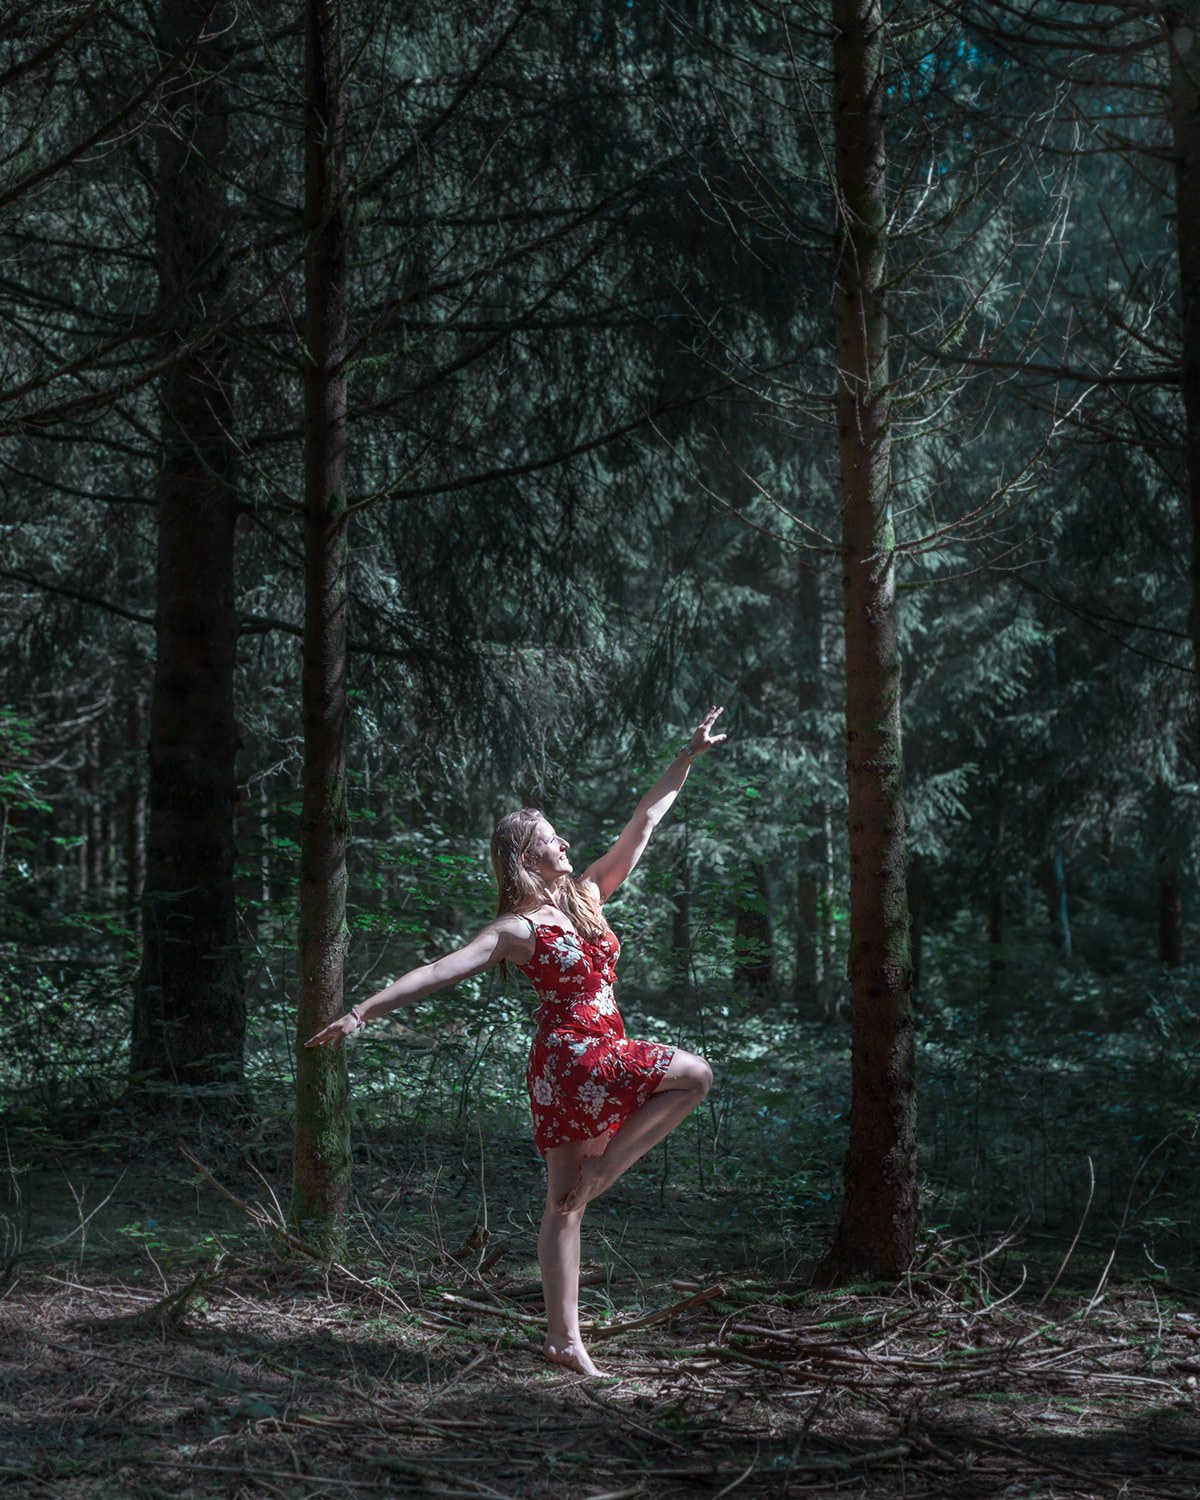 Photographie couleur d'une danseuse, mise en scène dans une forêt